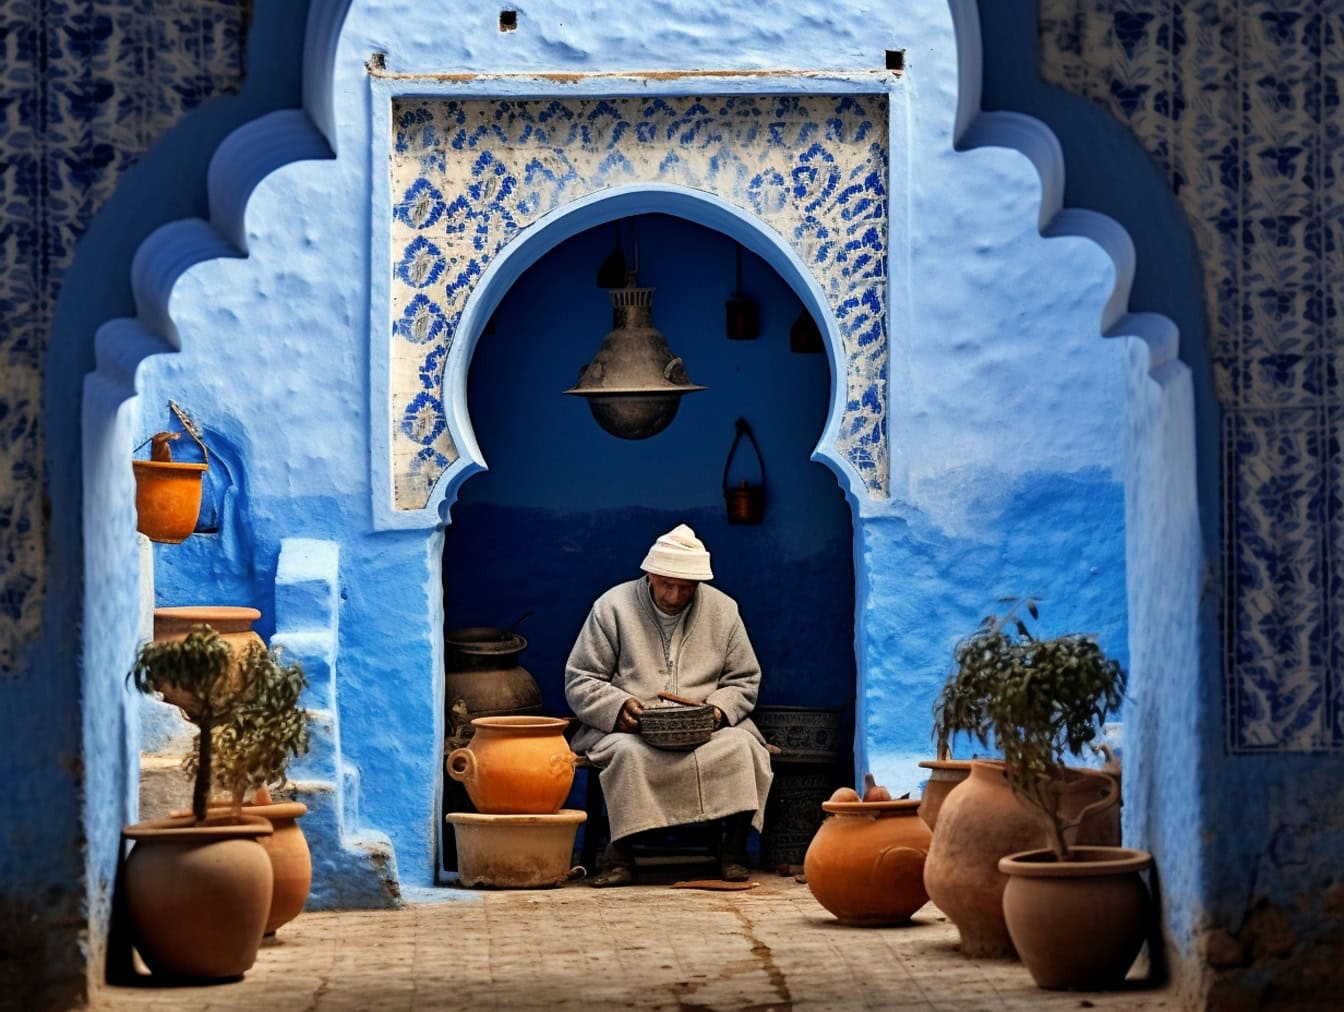 Ένας ηλικιωμένος άνδρας κάθεται στην πόρτα μιας παραδοσιακής μαροκινής αυλής δίπλα σε πήλινες γλάστρες